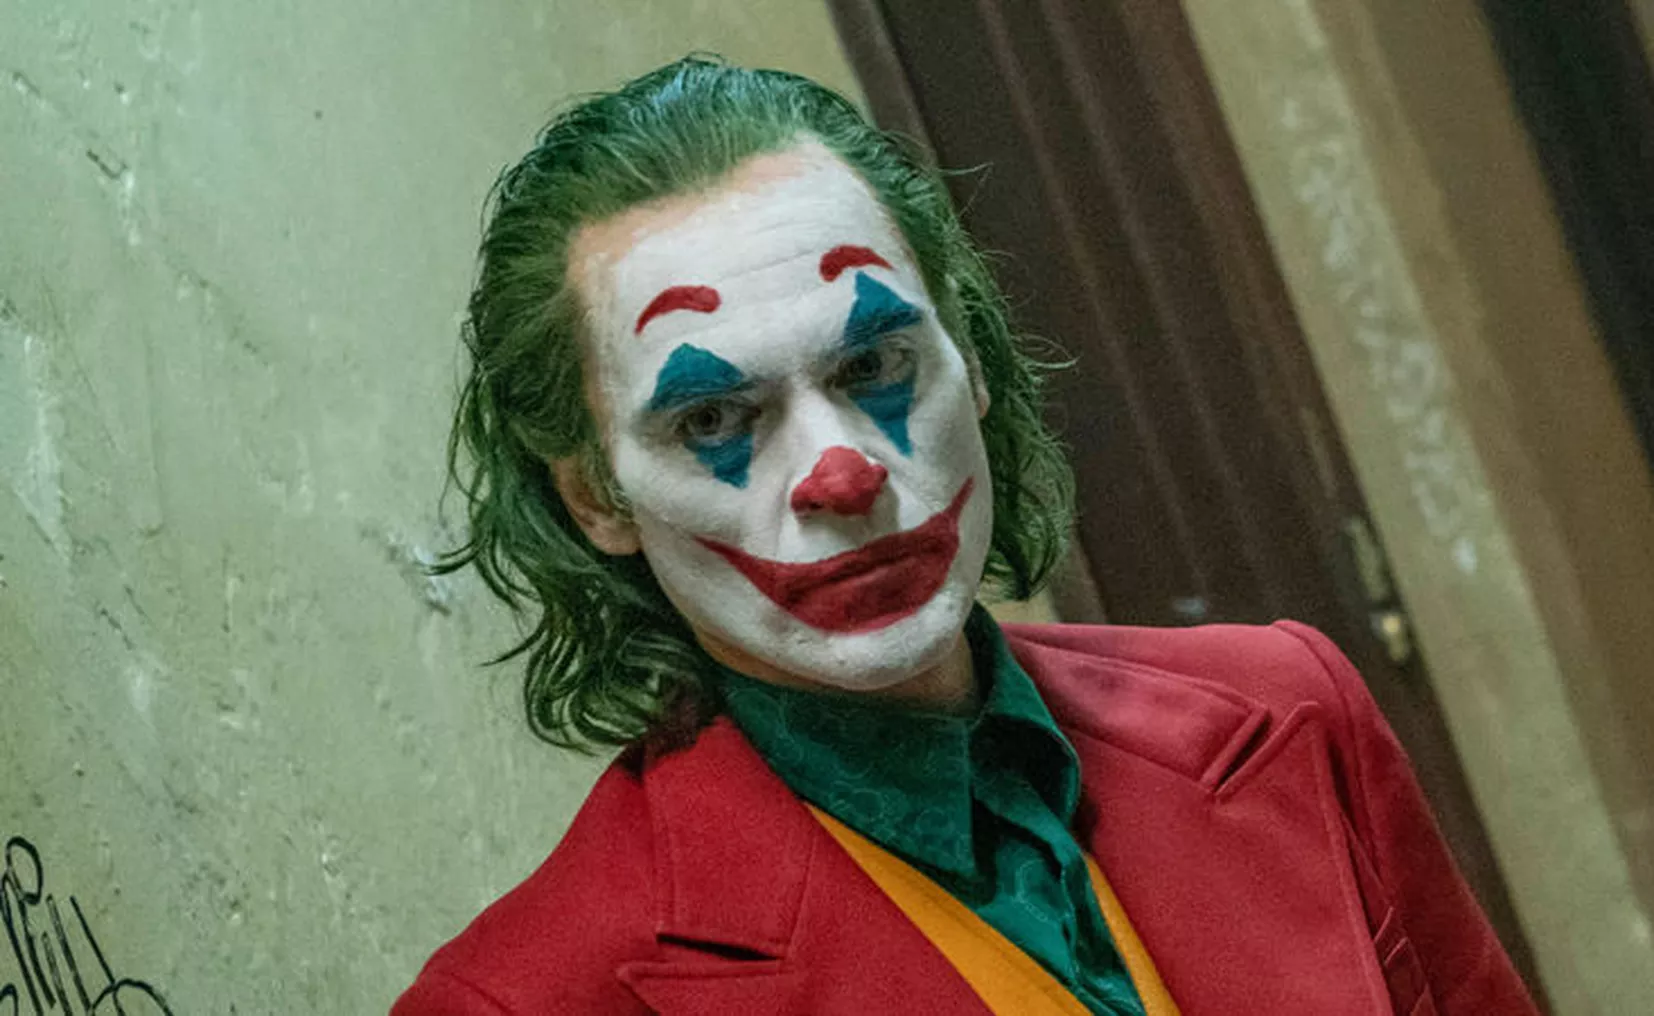 Diputada pide restringir la película del Joker por su "violencia y cru...